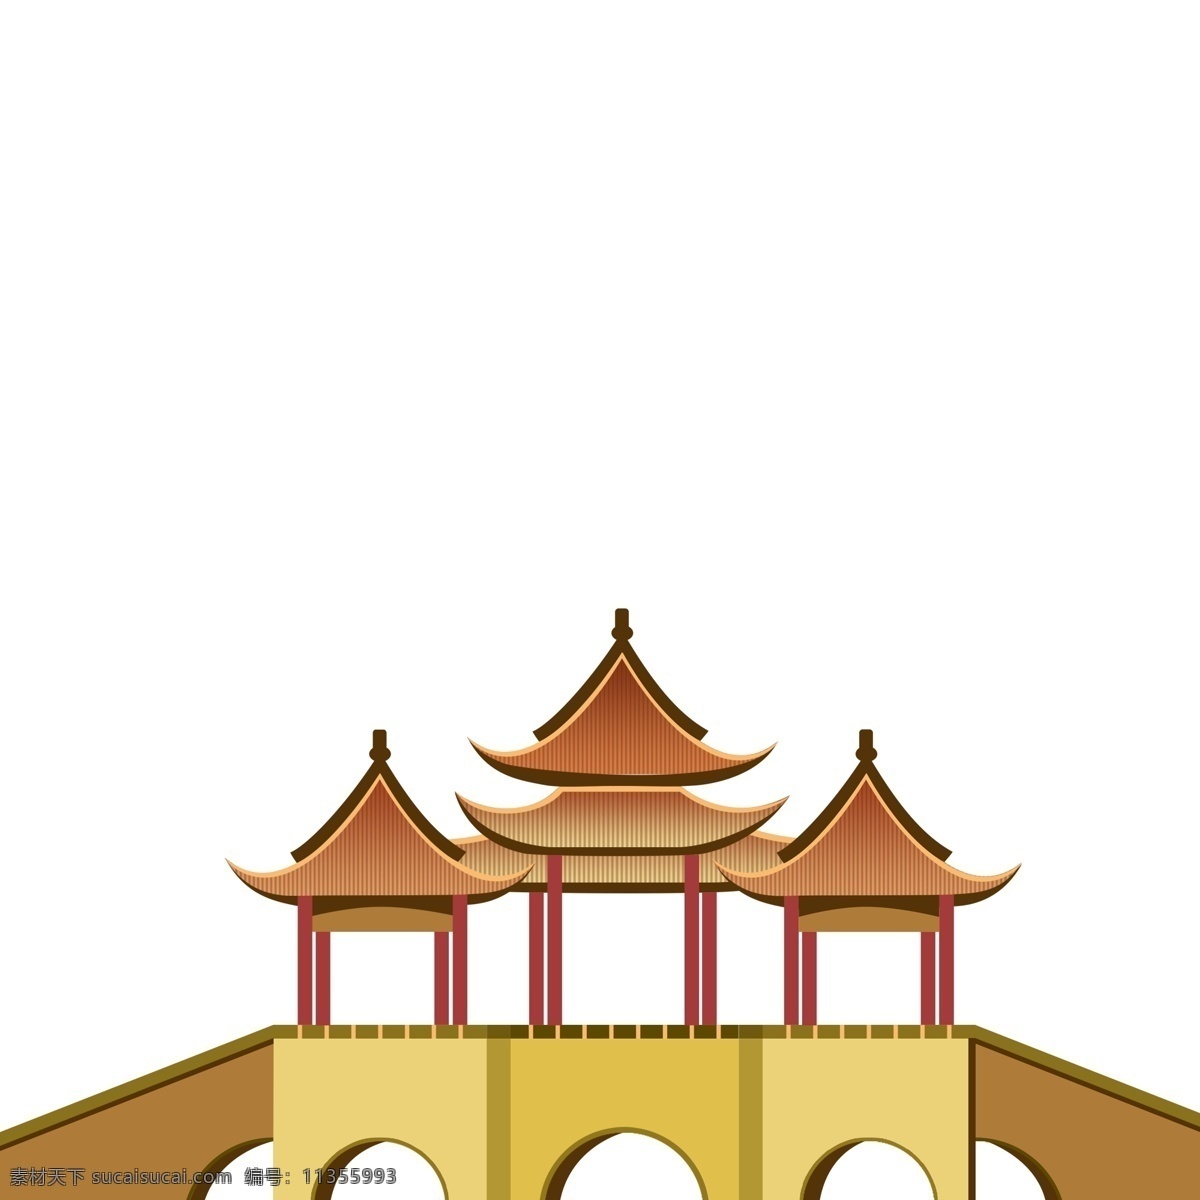 五亭 莲花 桥 手绘 建筑设计 插画 莲花桥 建筑 古建筑 古代元素 中国元素